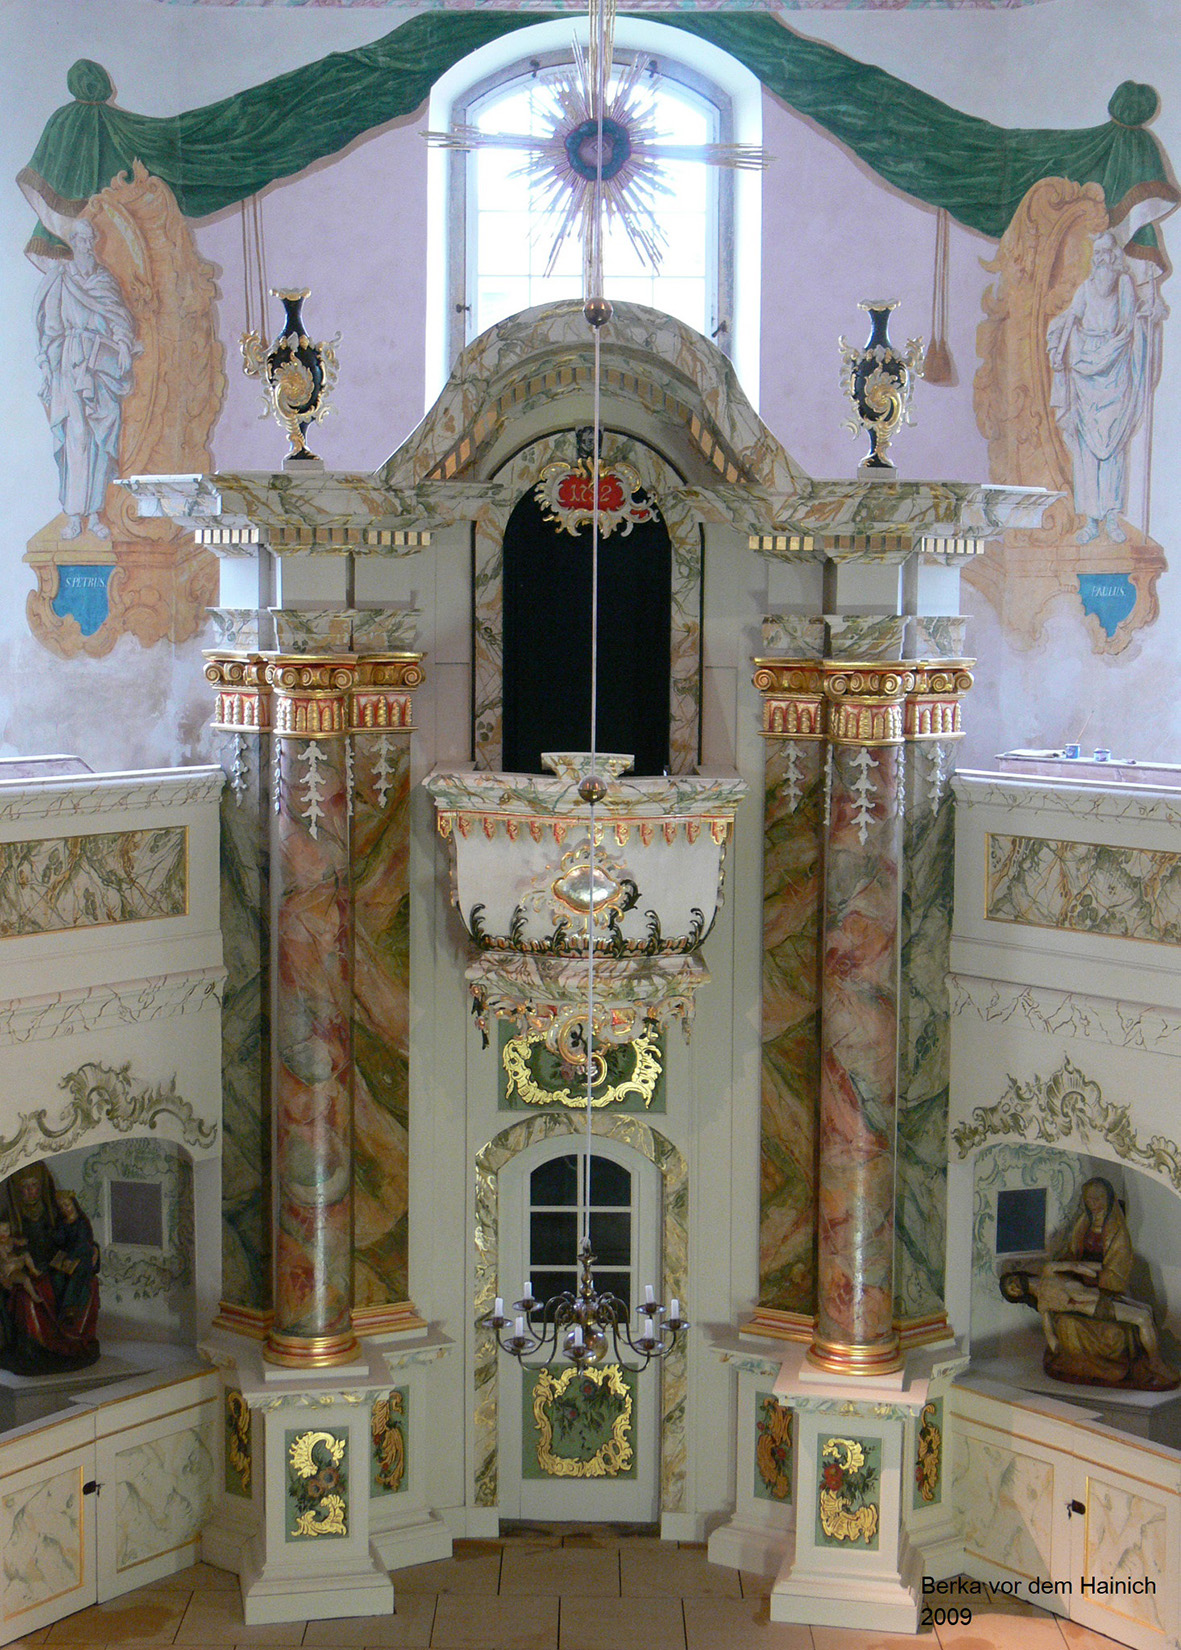 Berka vor dem Hainich, Kirche - Altar nach der Restaurierung